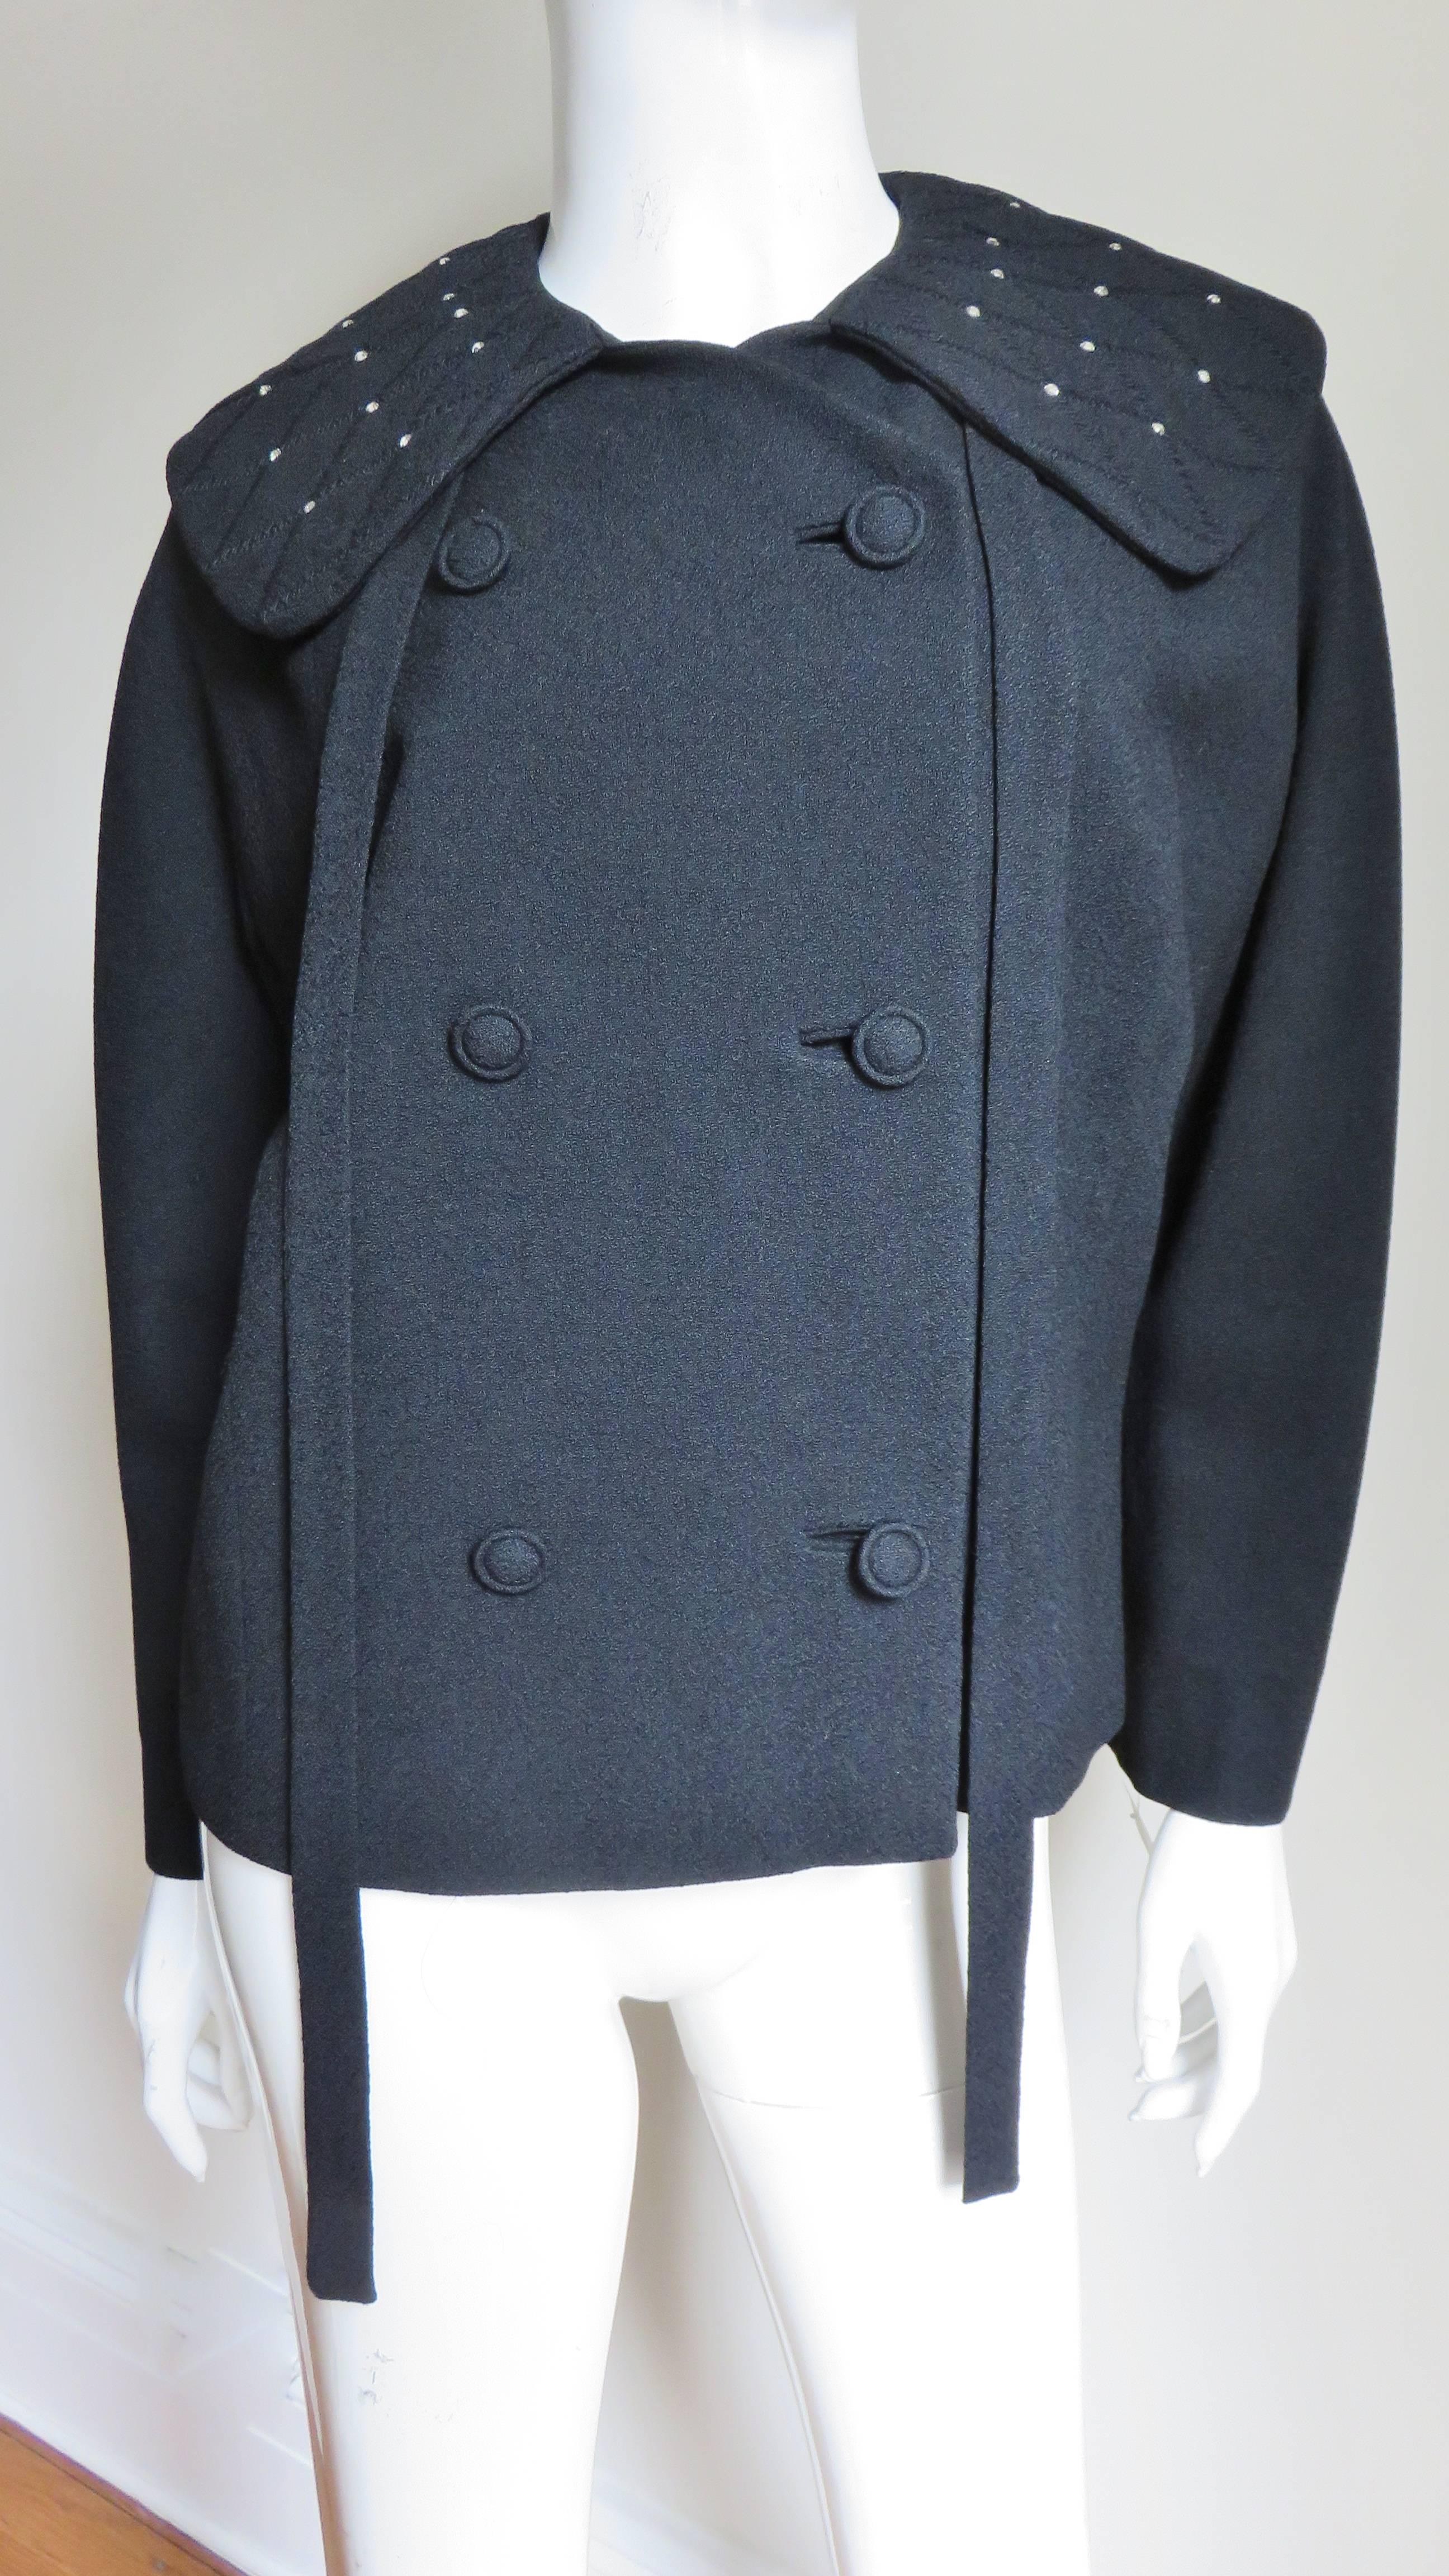 Une superbe veste en laine noire de Lilli Ann. Le grand col a des attaches et est surpiqué d'un motif en losange avec des strass sertis sur les pointes.  Il est doublement boutonné, avec des boutons auto-couverts et des boutonnières reliées. Les